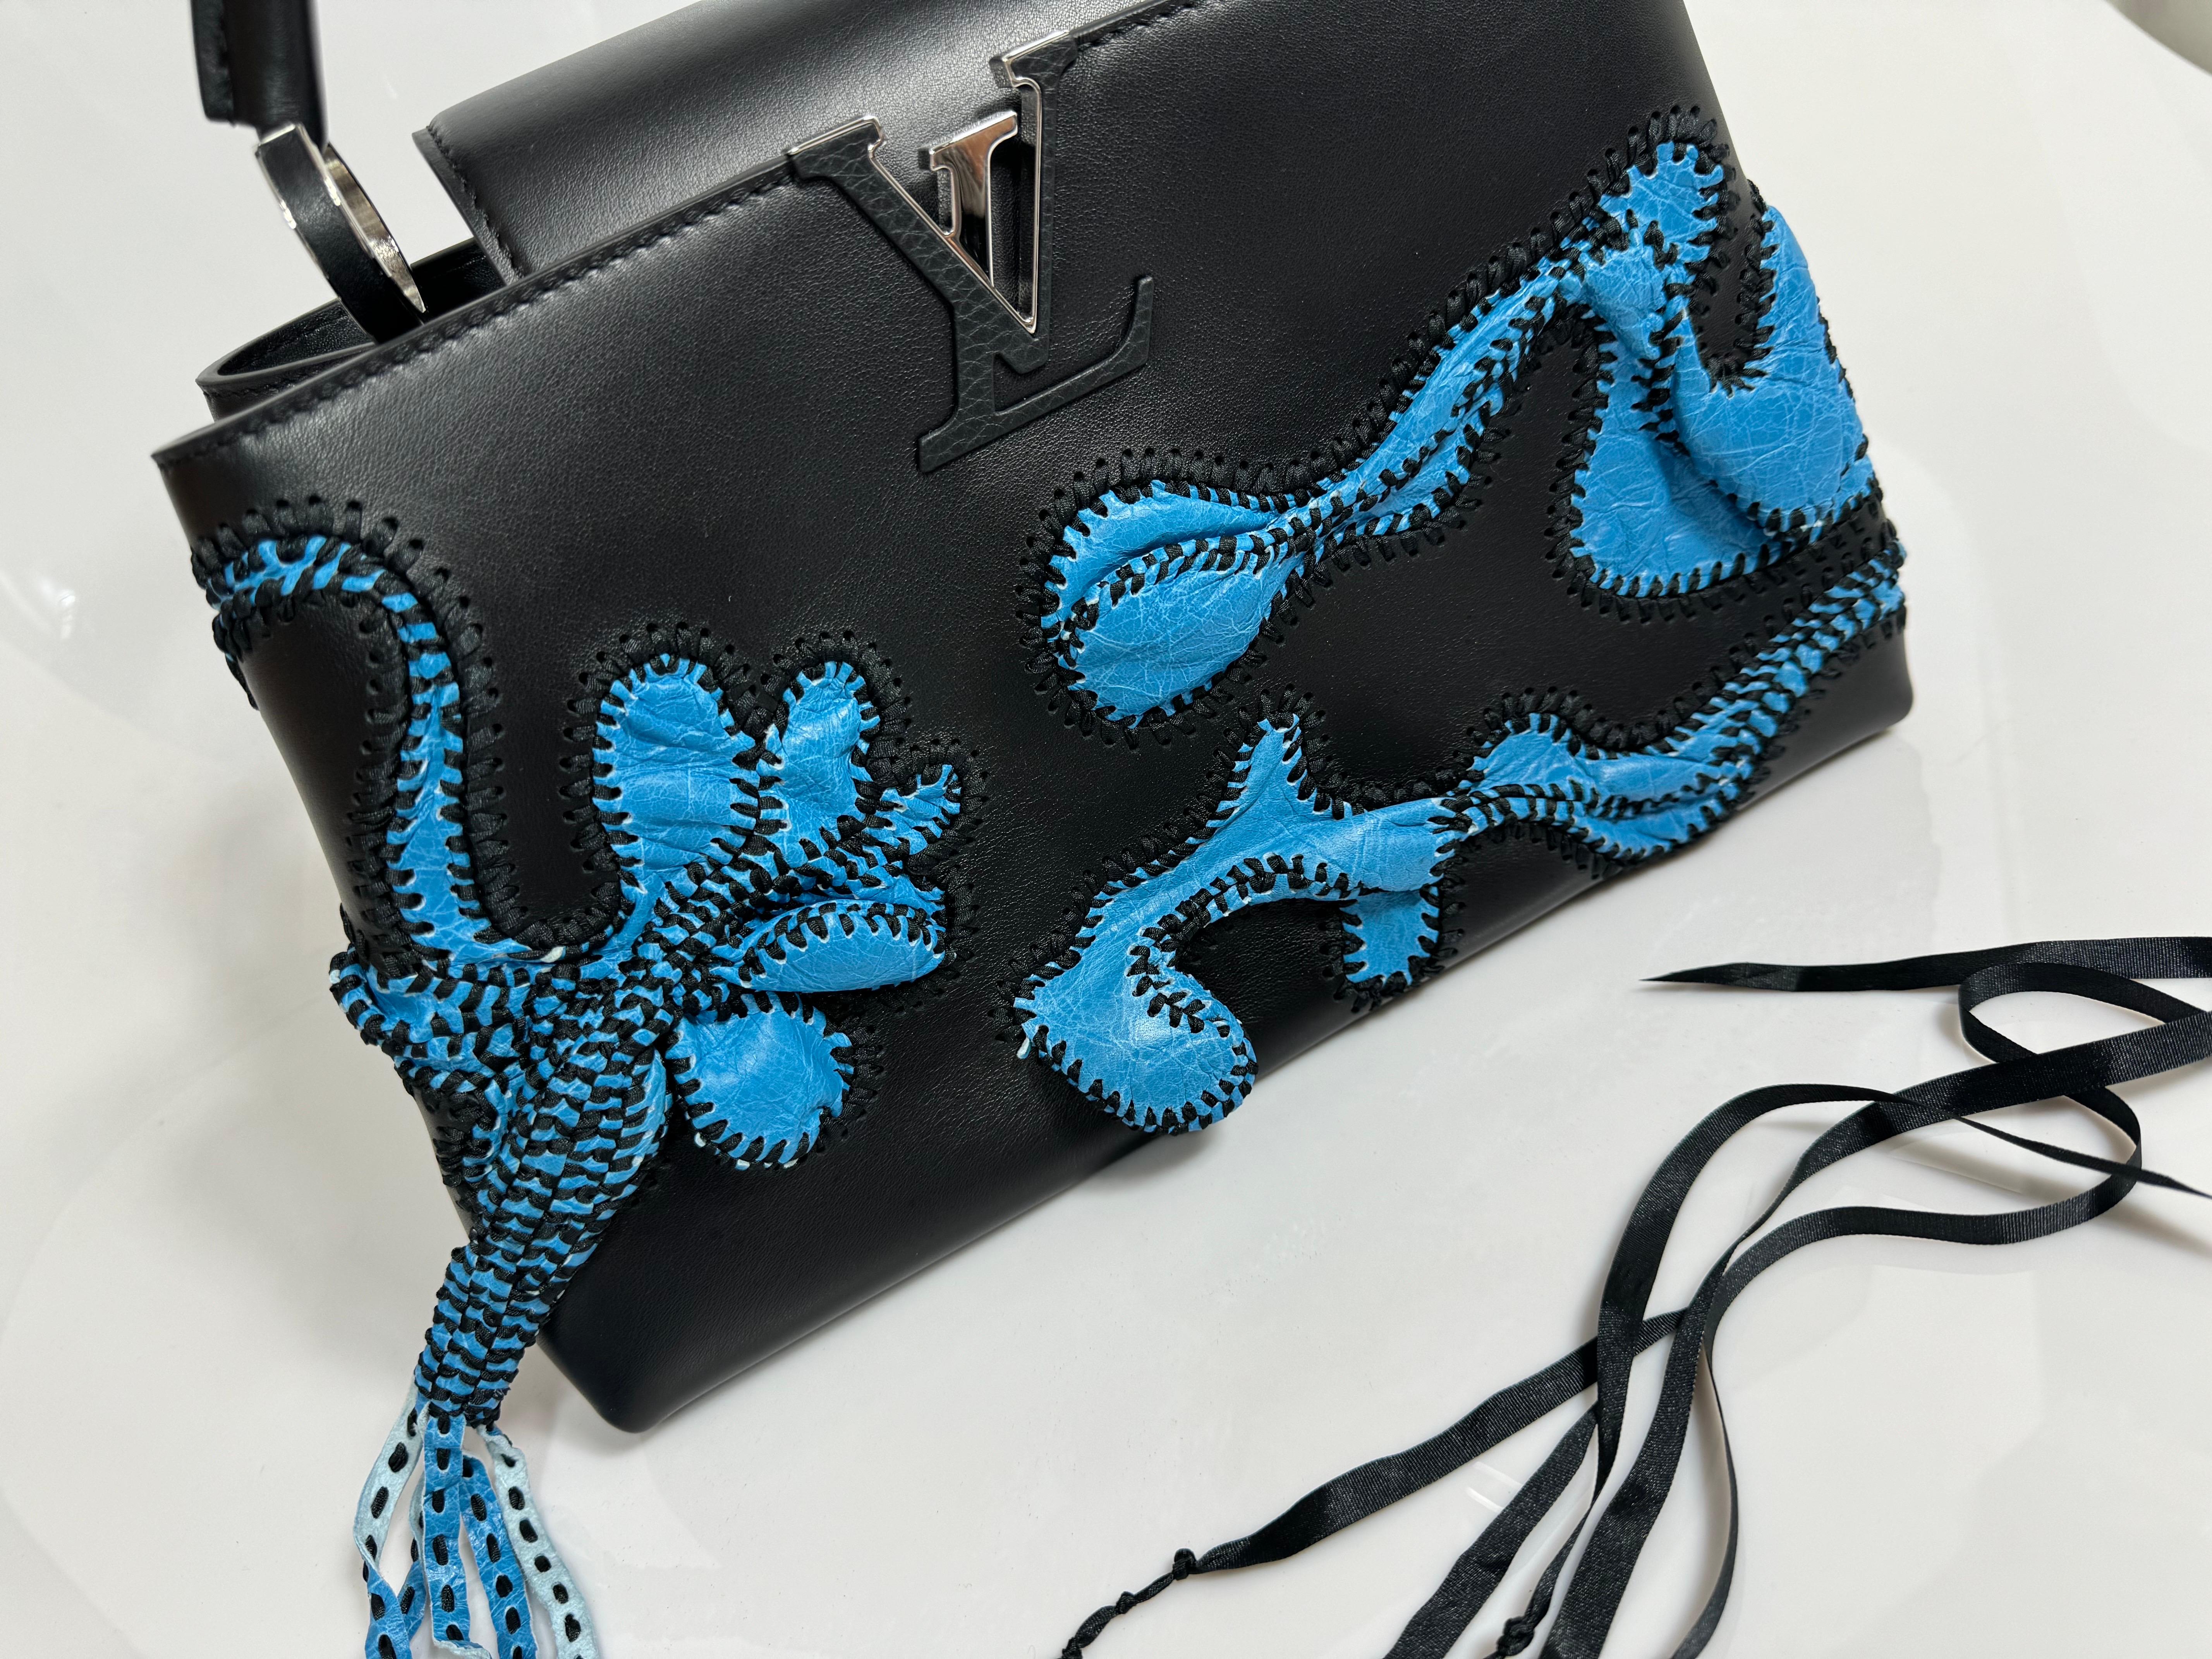 Louis Vuitton Limited Edition Nicholas Hlobo's Artycapucines Handbag-NEW IN BOX en vente 2